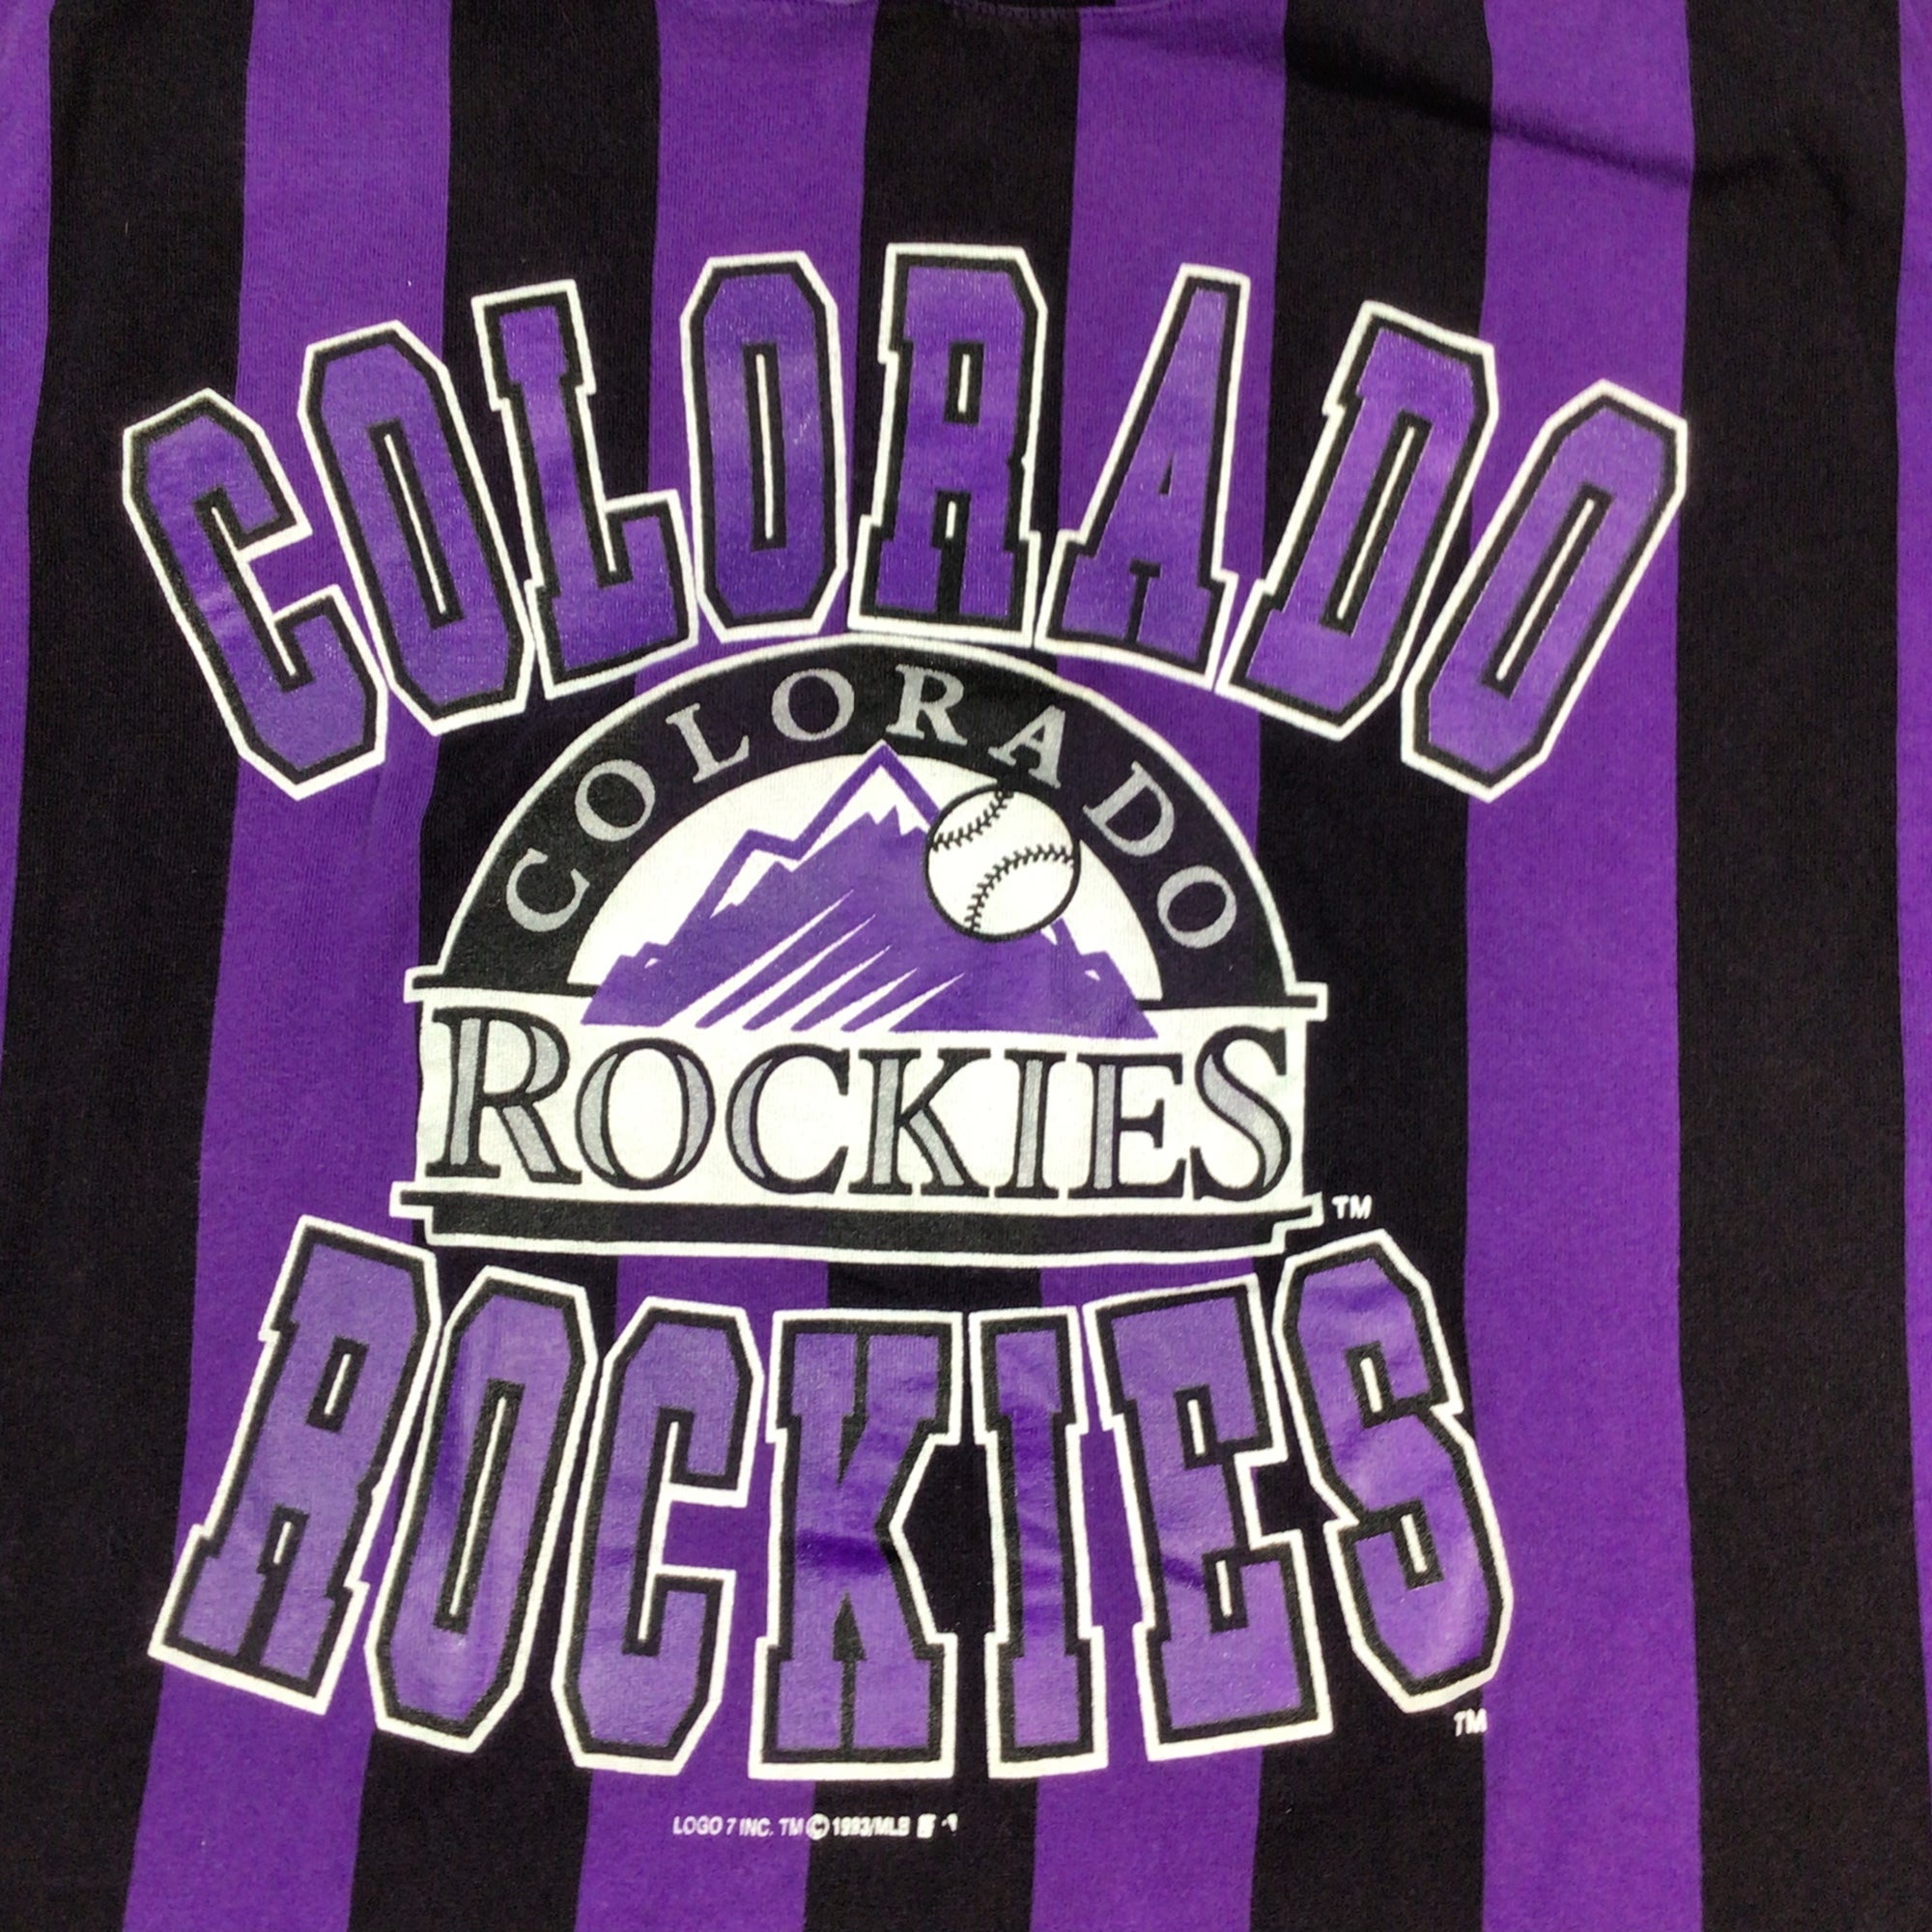 Colorado Rockies 1993 Baseball Rockies Vintage Shirt, hoodie, sweater, long  sleeve and tank top